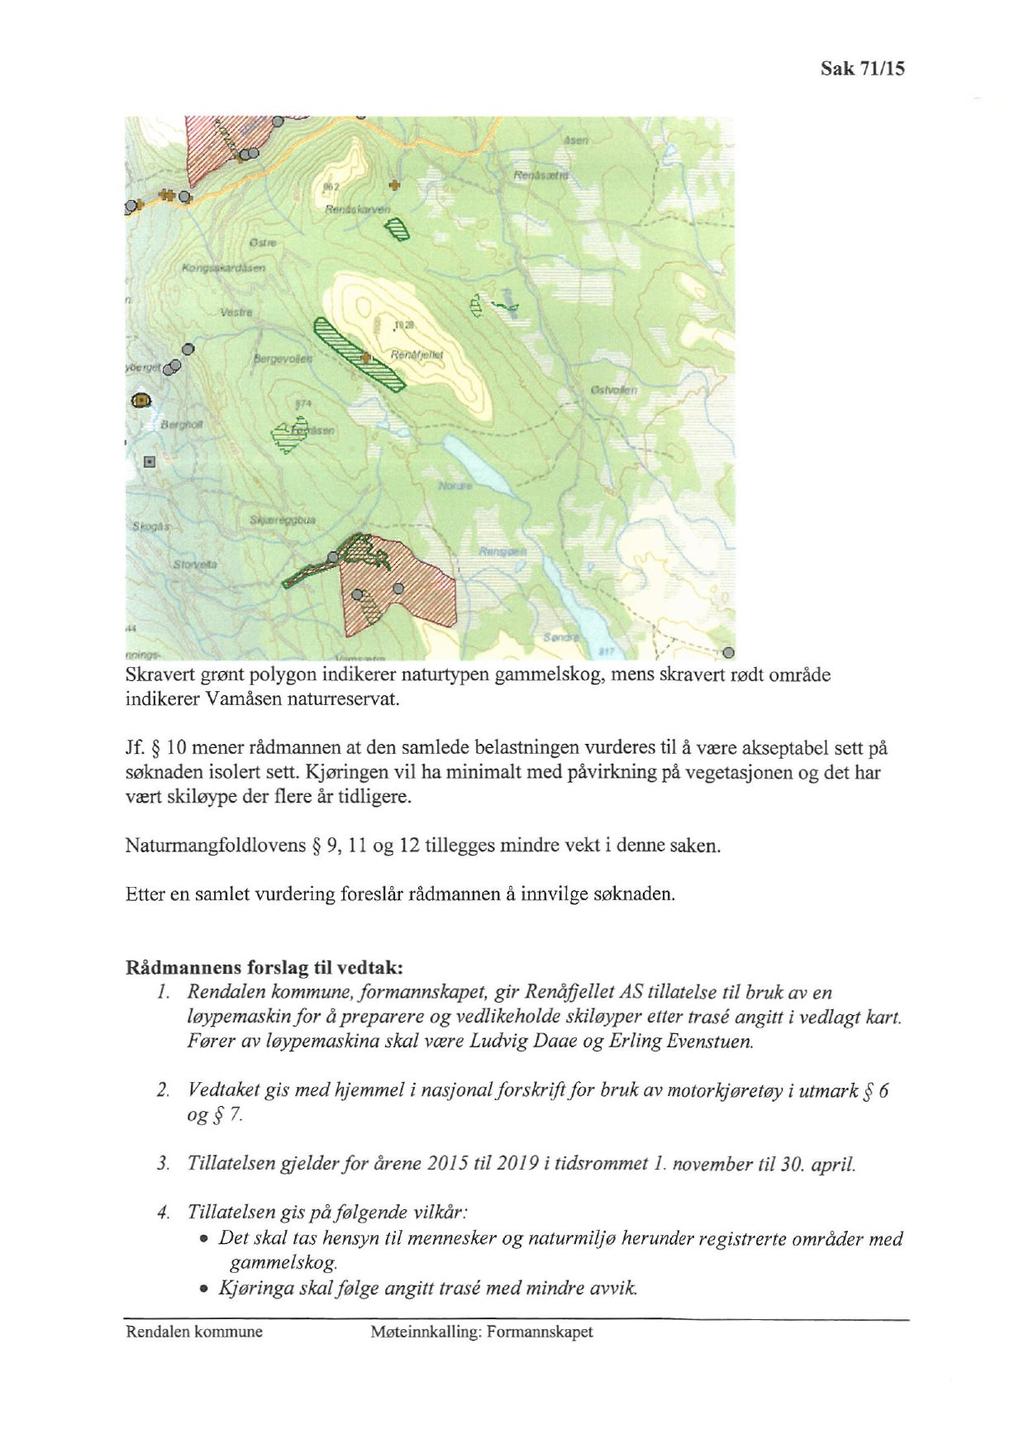 Sak 71/15 0 0 Skravert grønt polygon indikerer naturtypen gammelskog, mens skravert rødt område indikerer Vamåsen naturreservat. Jf.